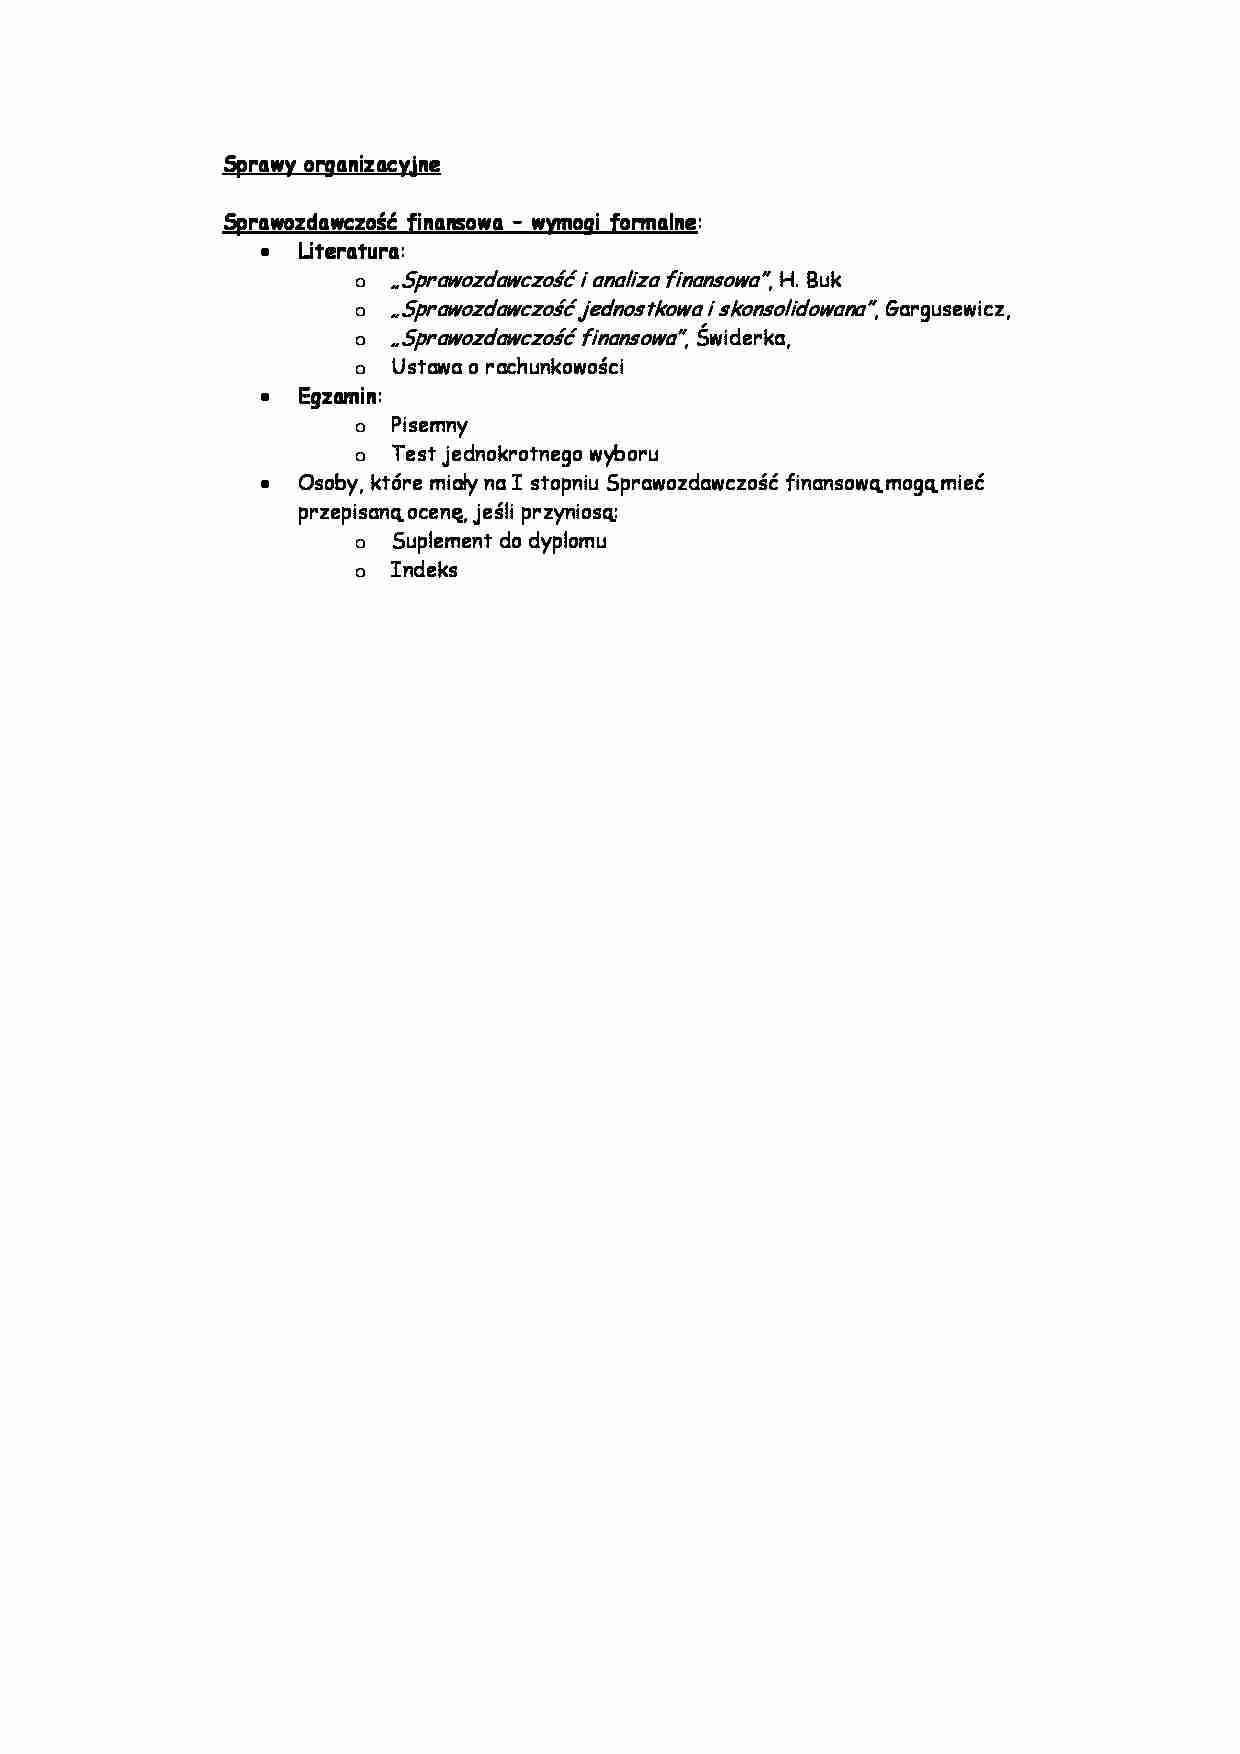 Standardy sprawozdawczości finansowej -opracowanie spraw organizacyjnych  - strona 1